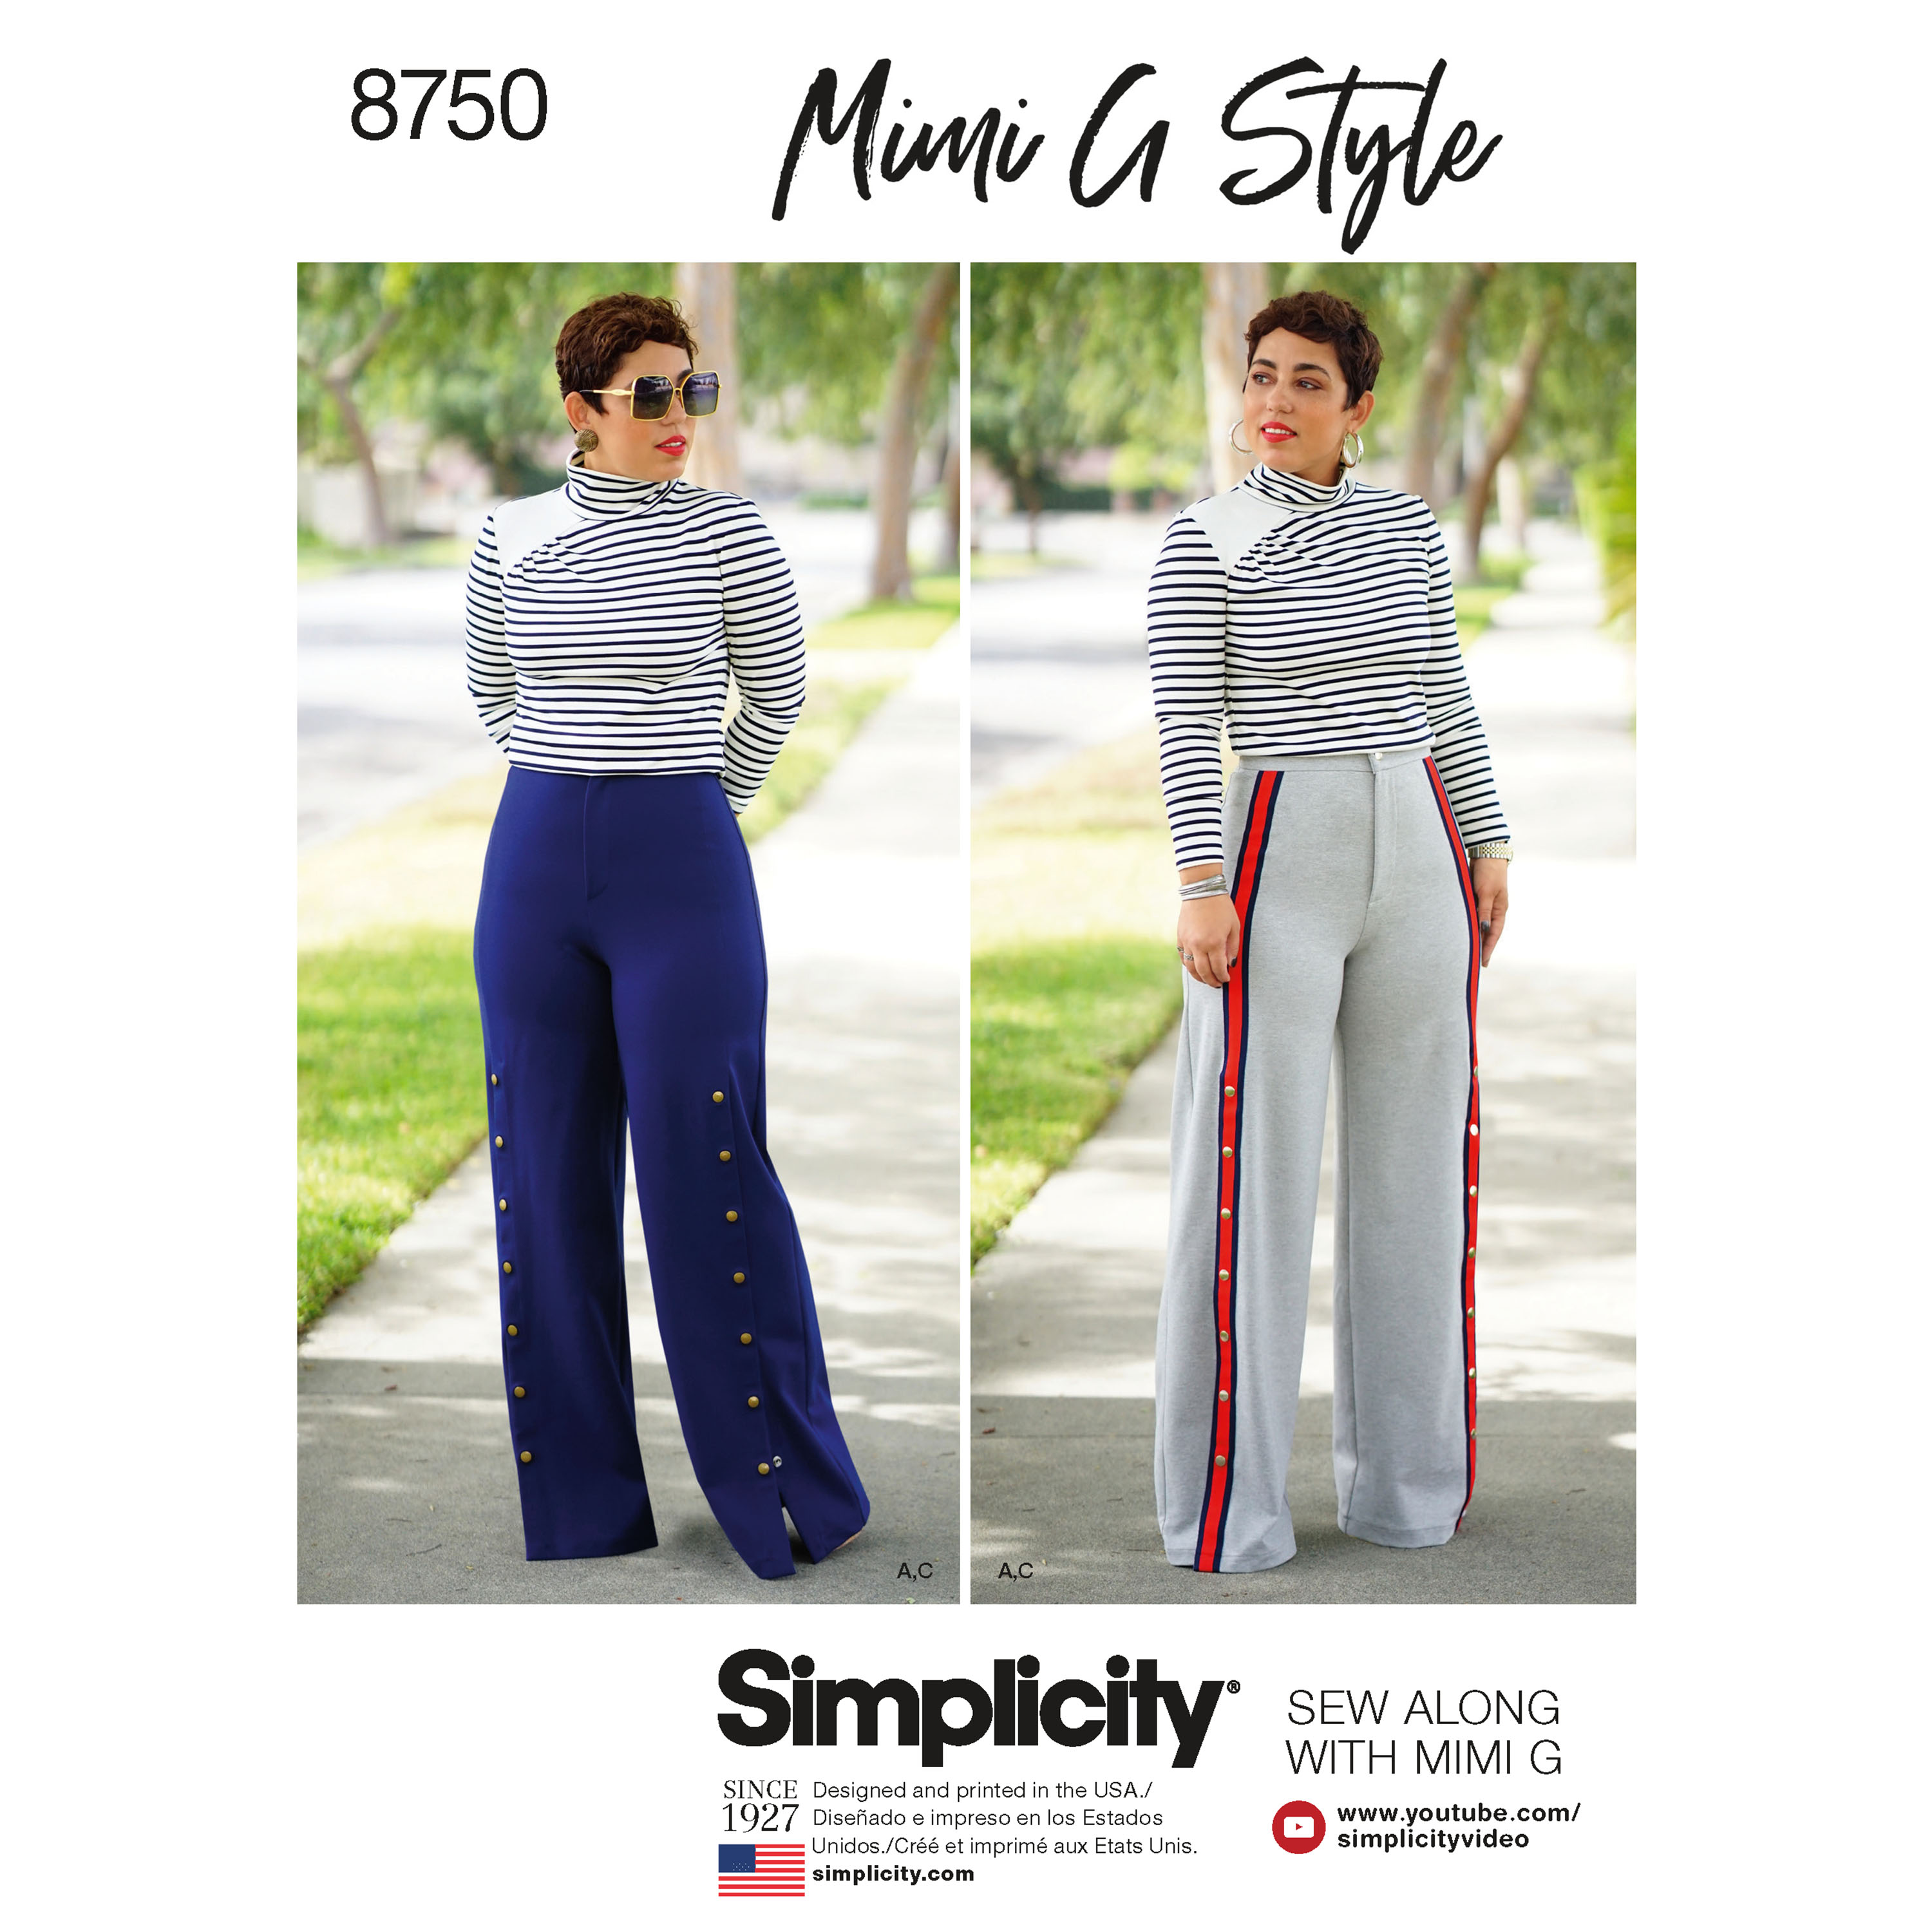 Simplicity Patterns SimplicityPattern 8750 Patrons de pantalons hauts et jambes larges pour femme par Mimi G Style blanc papier taille unique